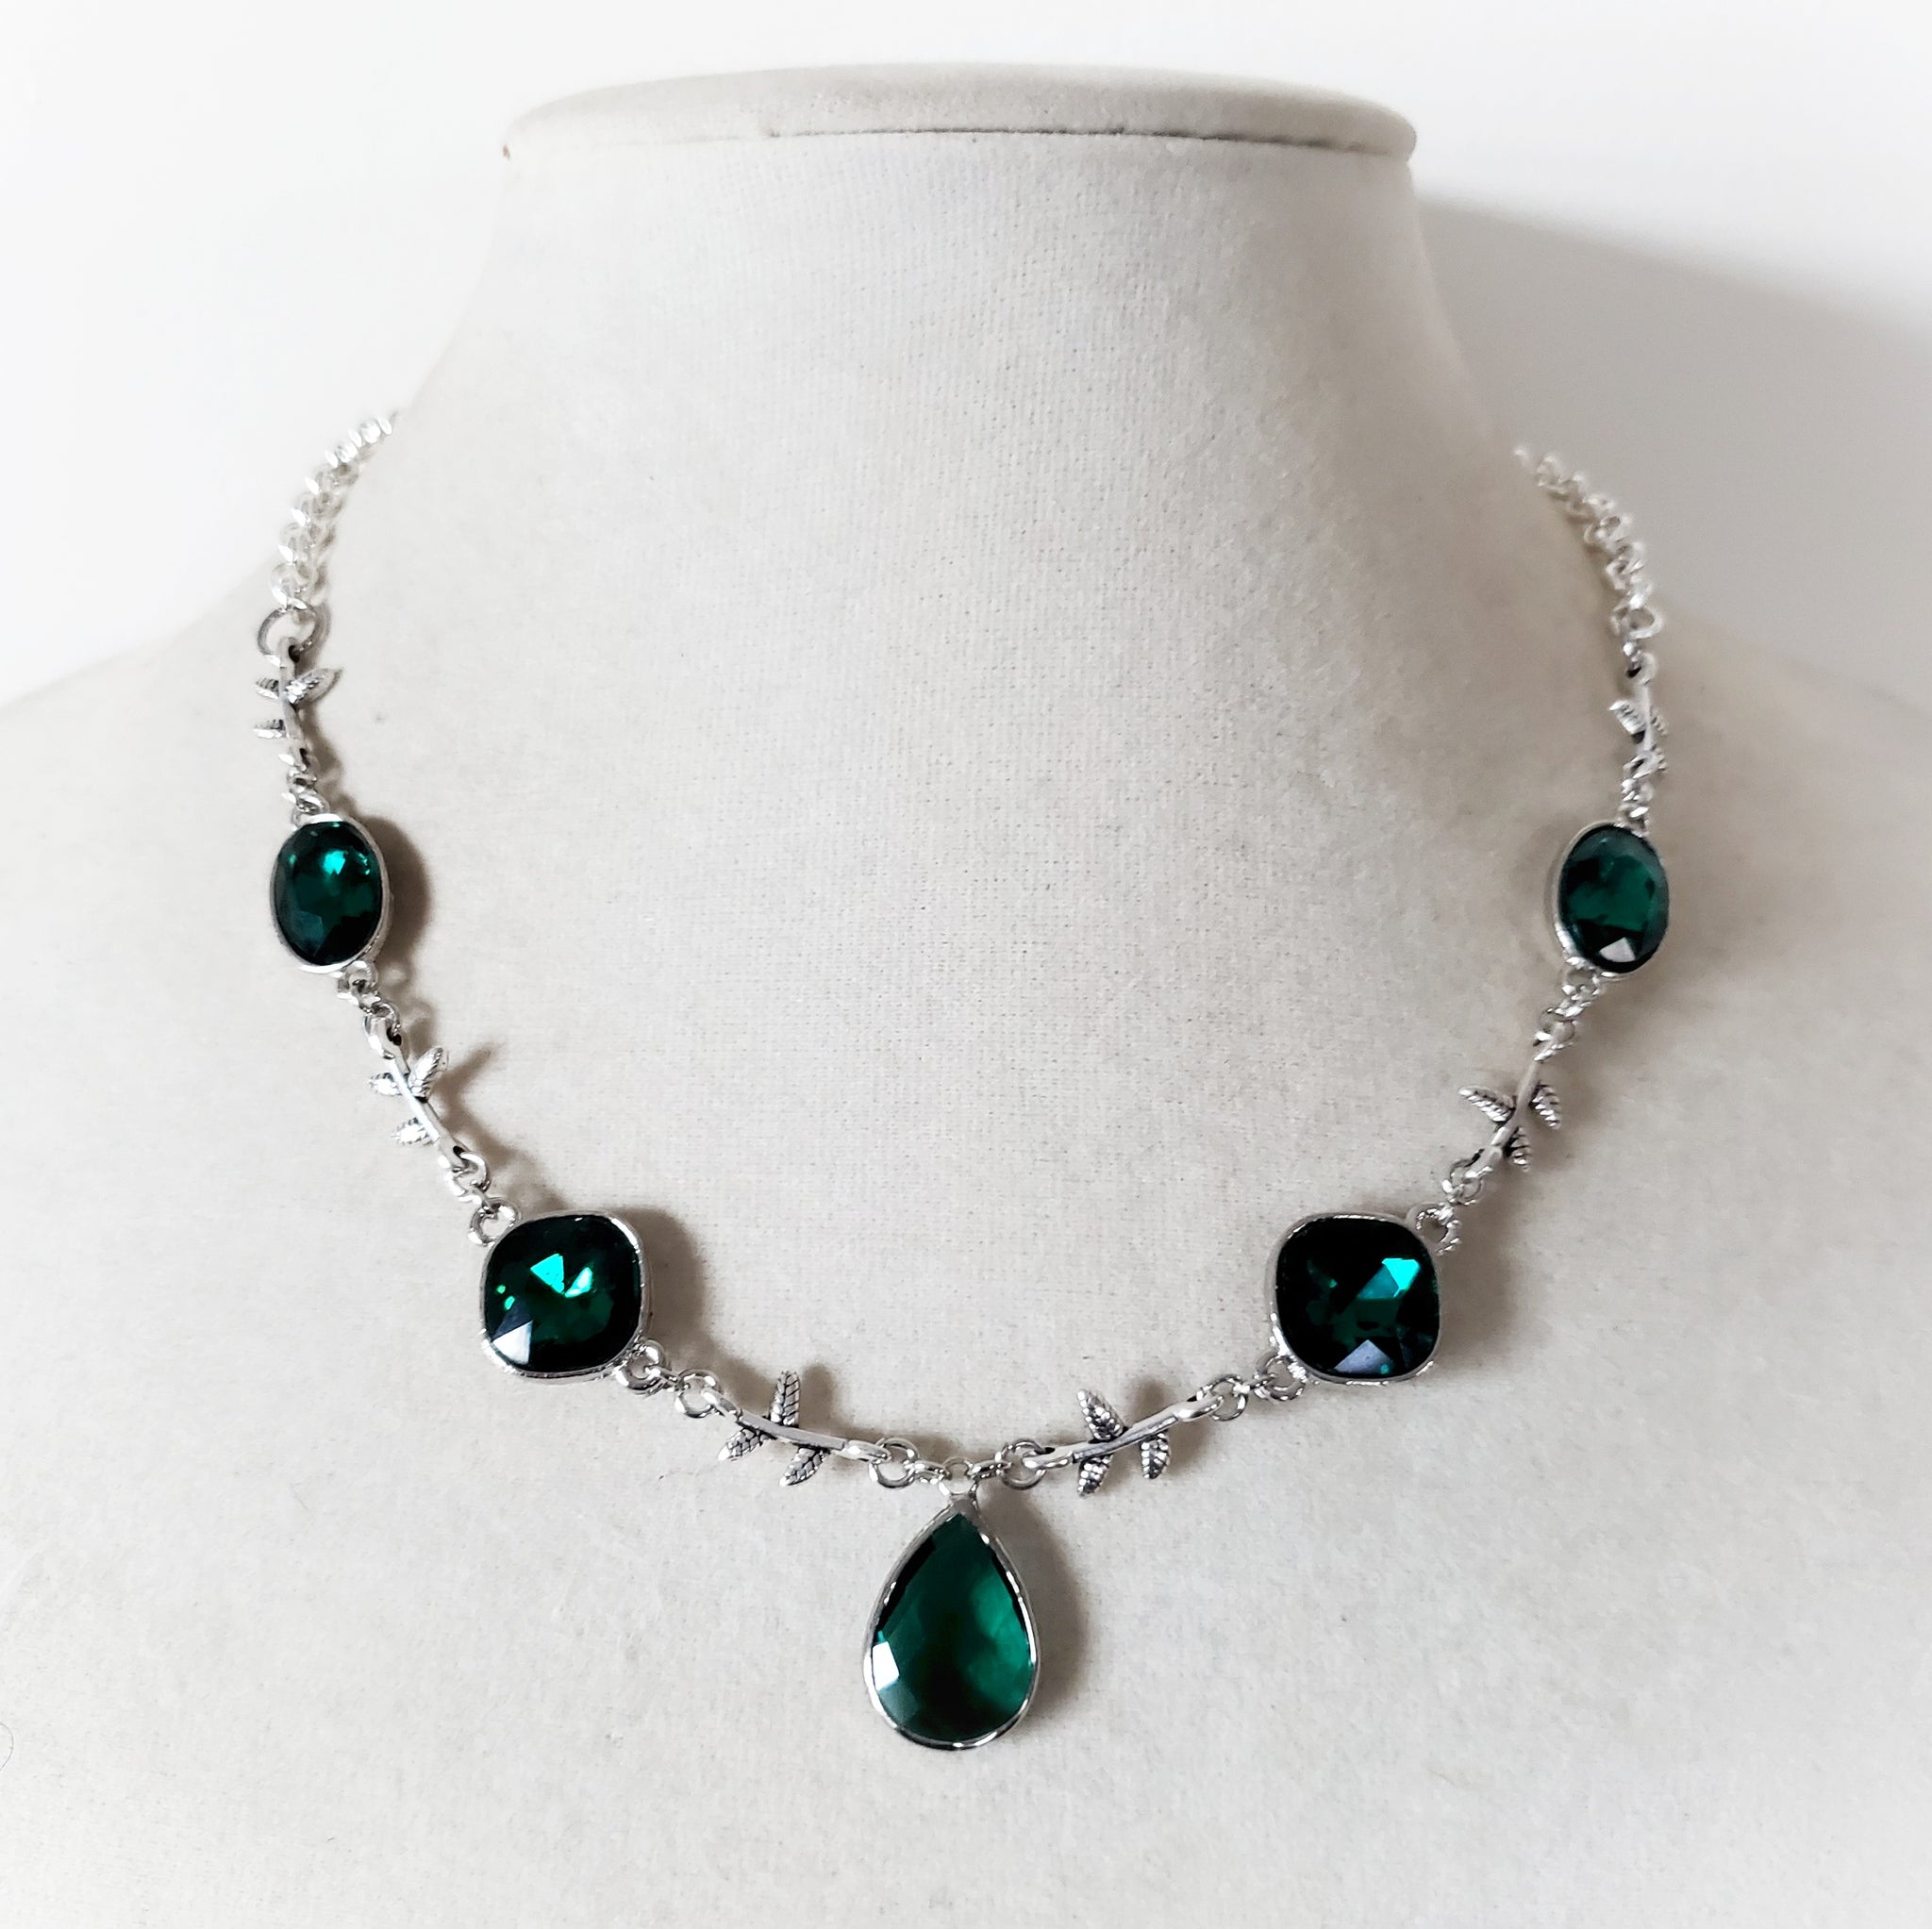 Bejeweled Vine Necklace in Green, Blue or Black